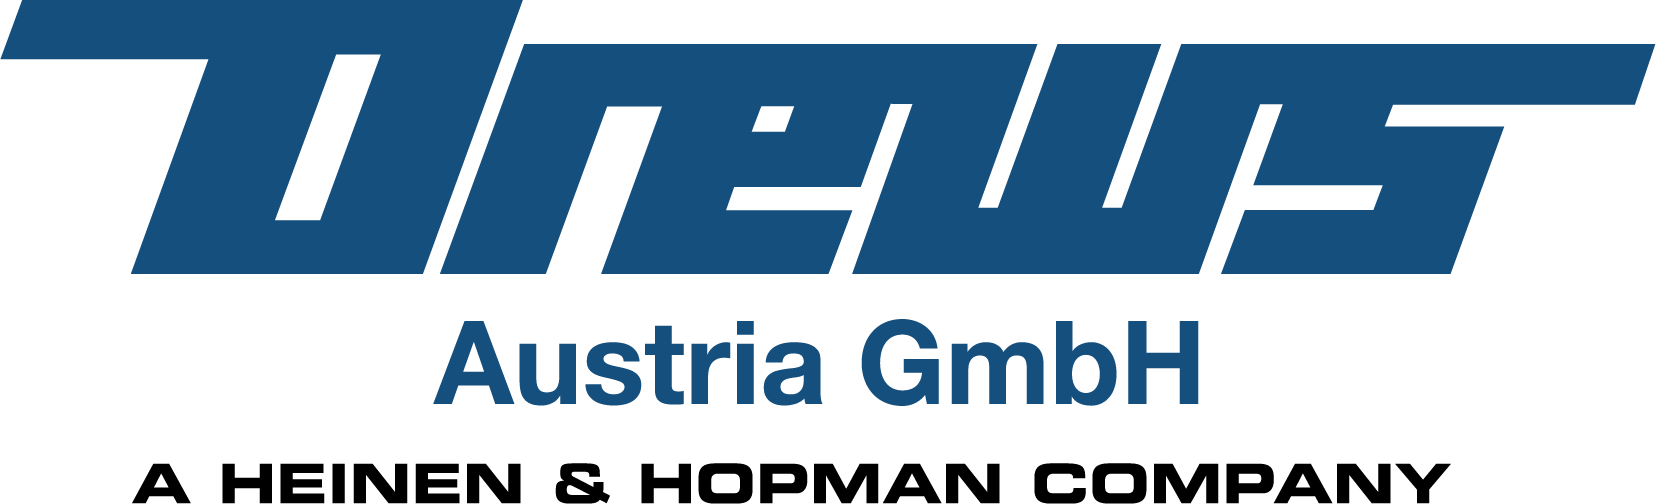 Drews Austria Logo